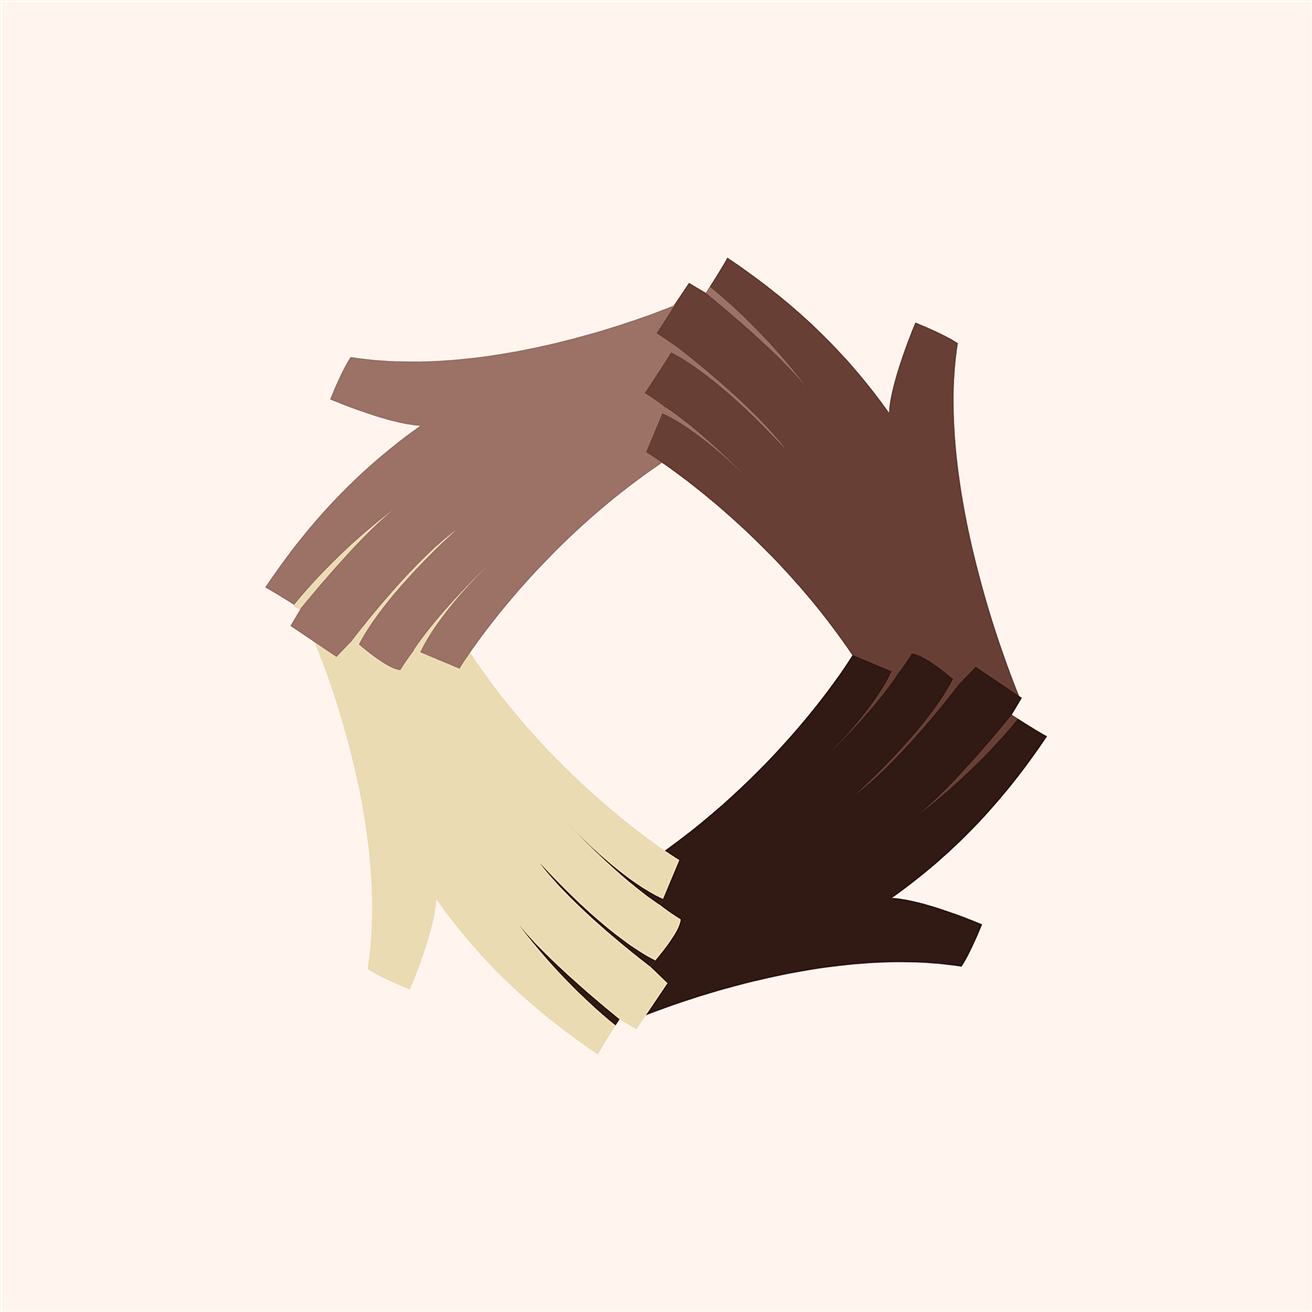 Image numérique de quatre mains se tenant dans un cercle de tons de peau différents